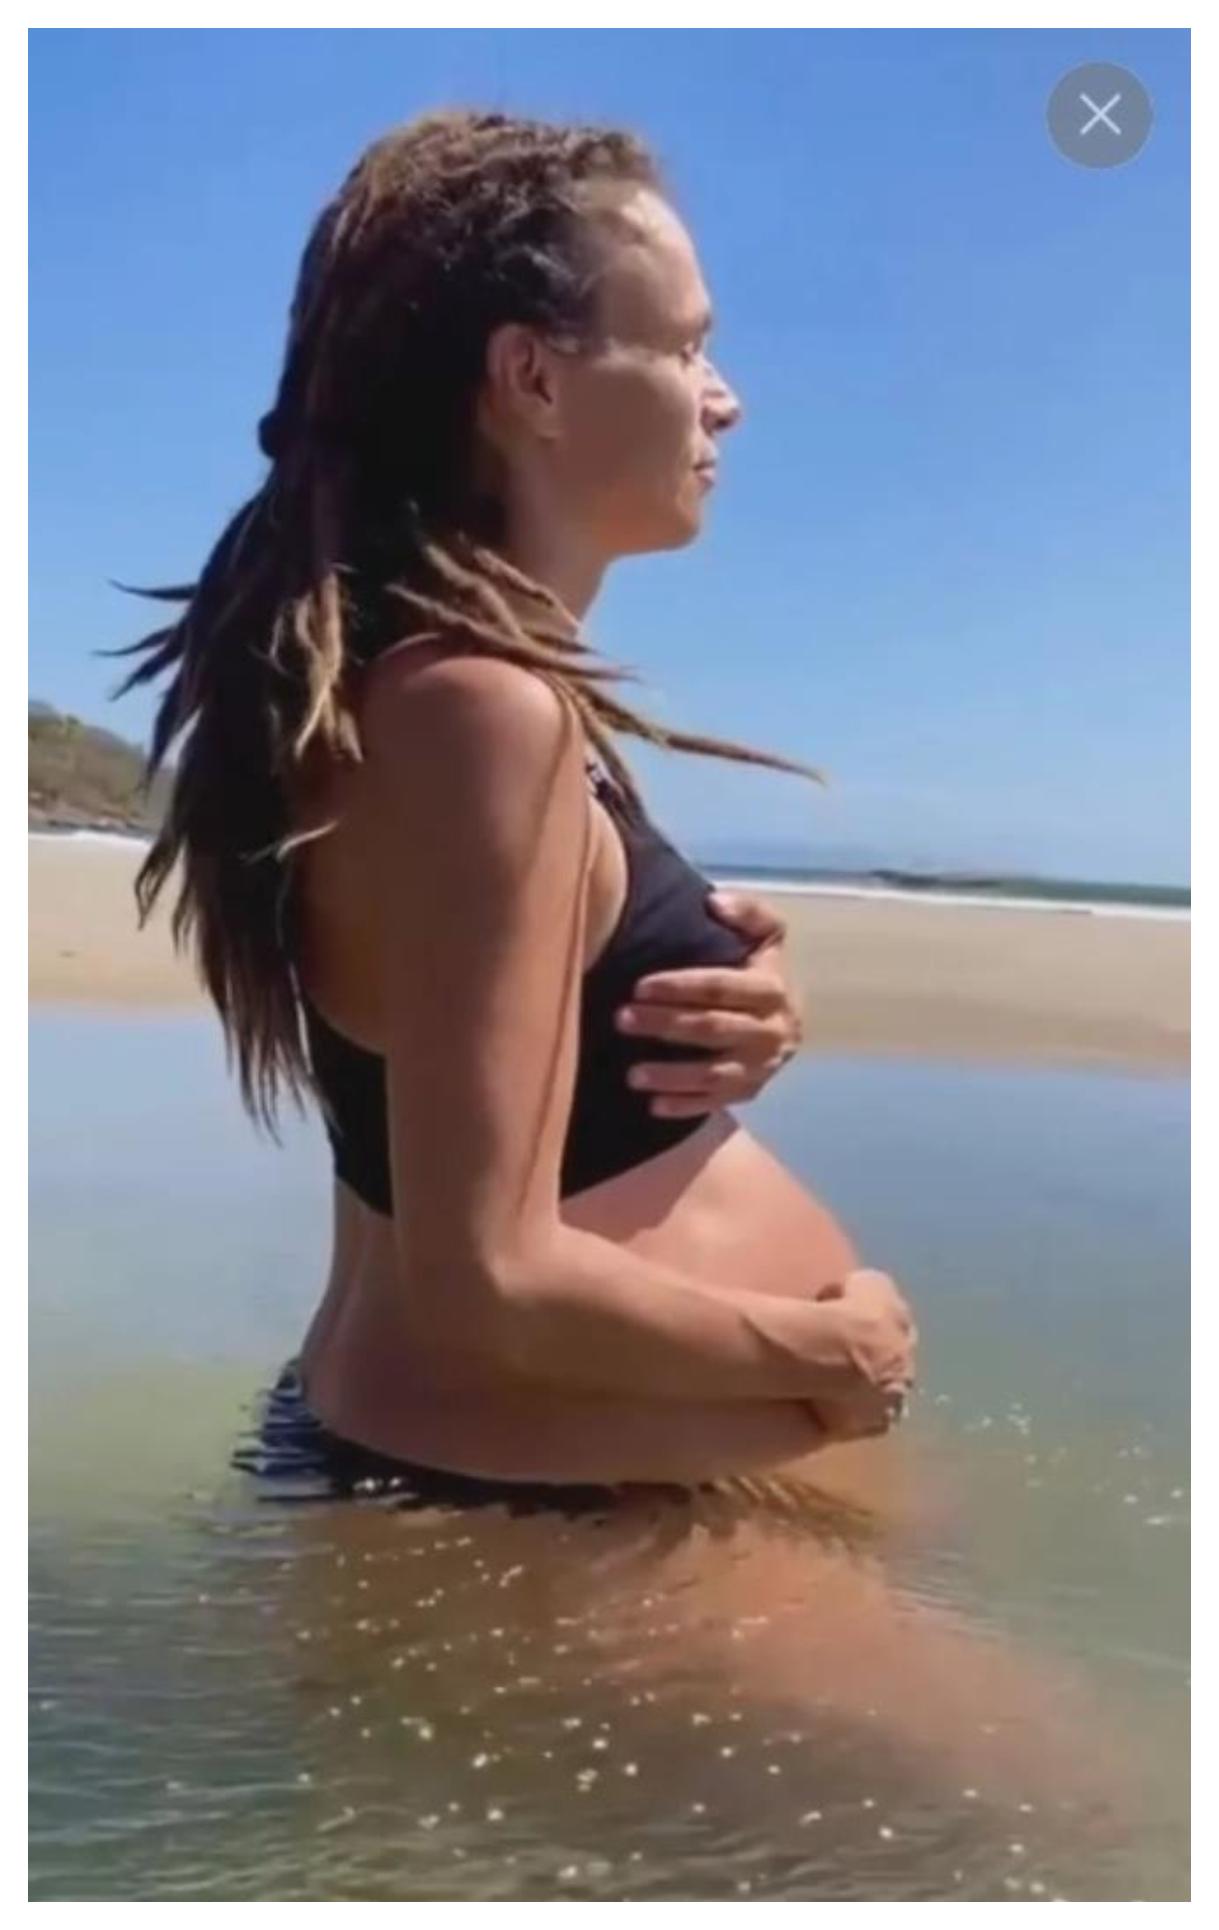 37χρονη μητέρα: Της έσπασαν τα νερά της στην παραλία και γέννησε μόνη της (βίντεο)